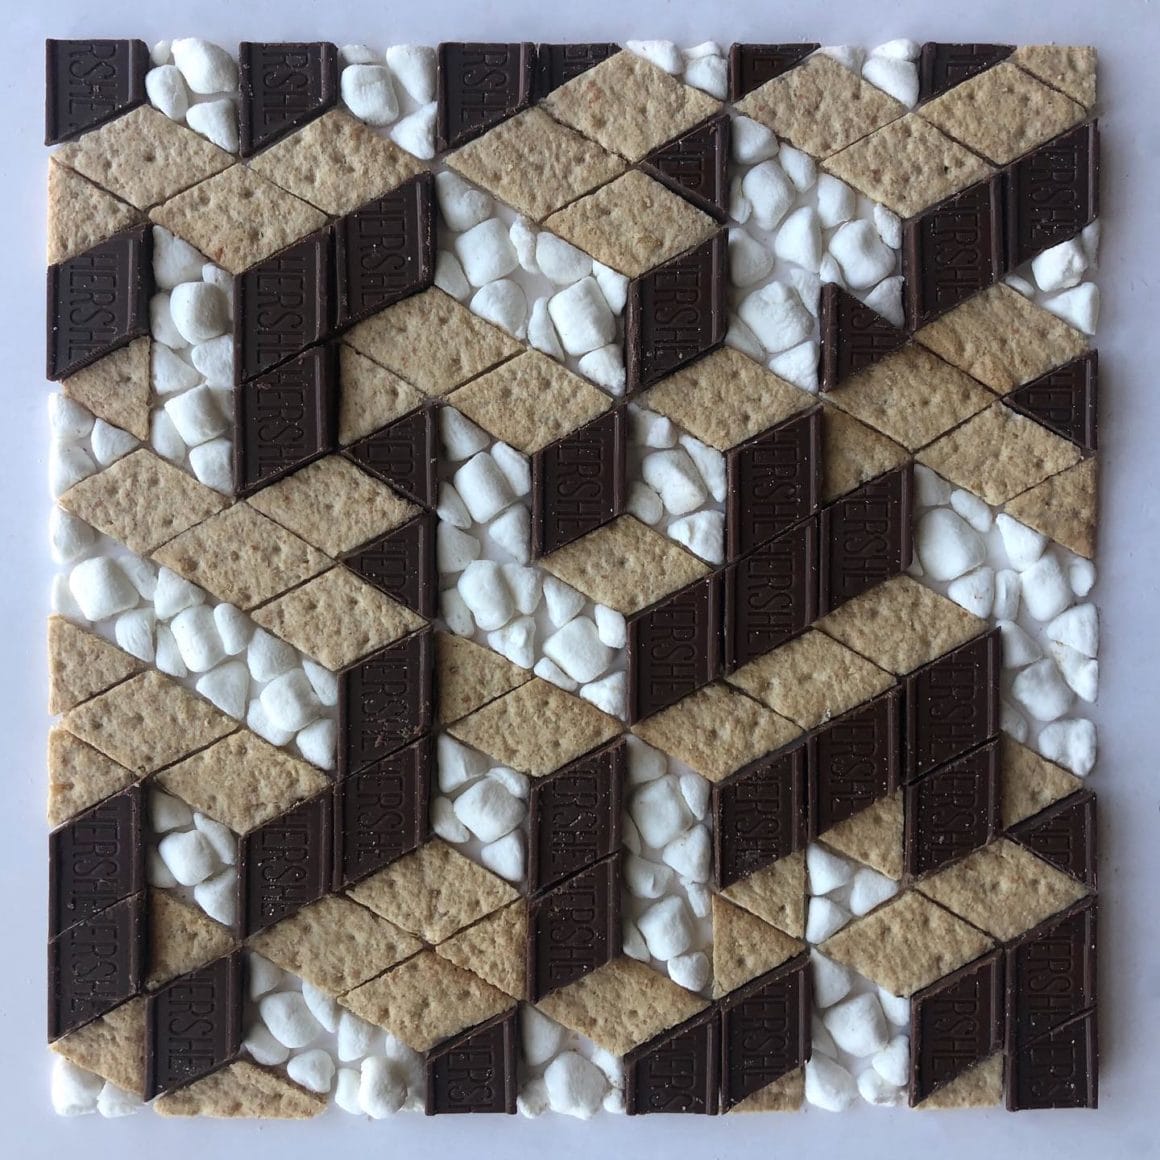 Oeuvre illusioniste représentant des cubes en relief créés avec des biscuits, des carrées de chocolat et des chamallows 